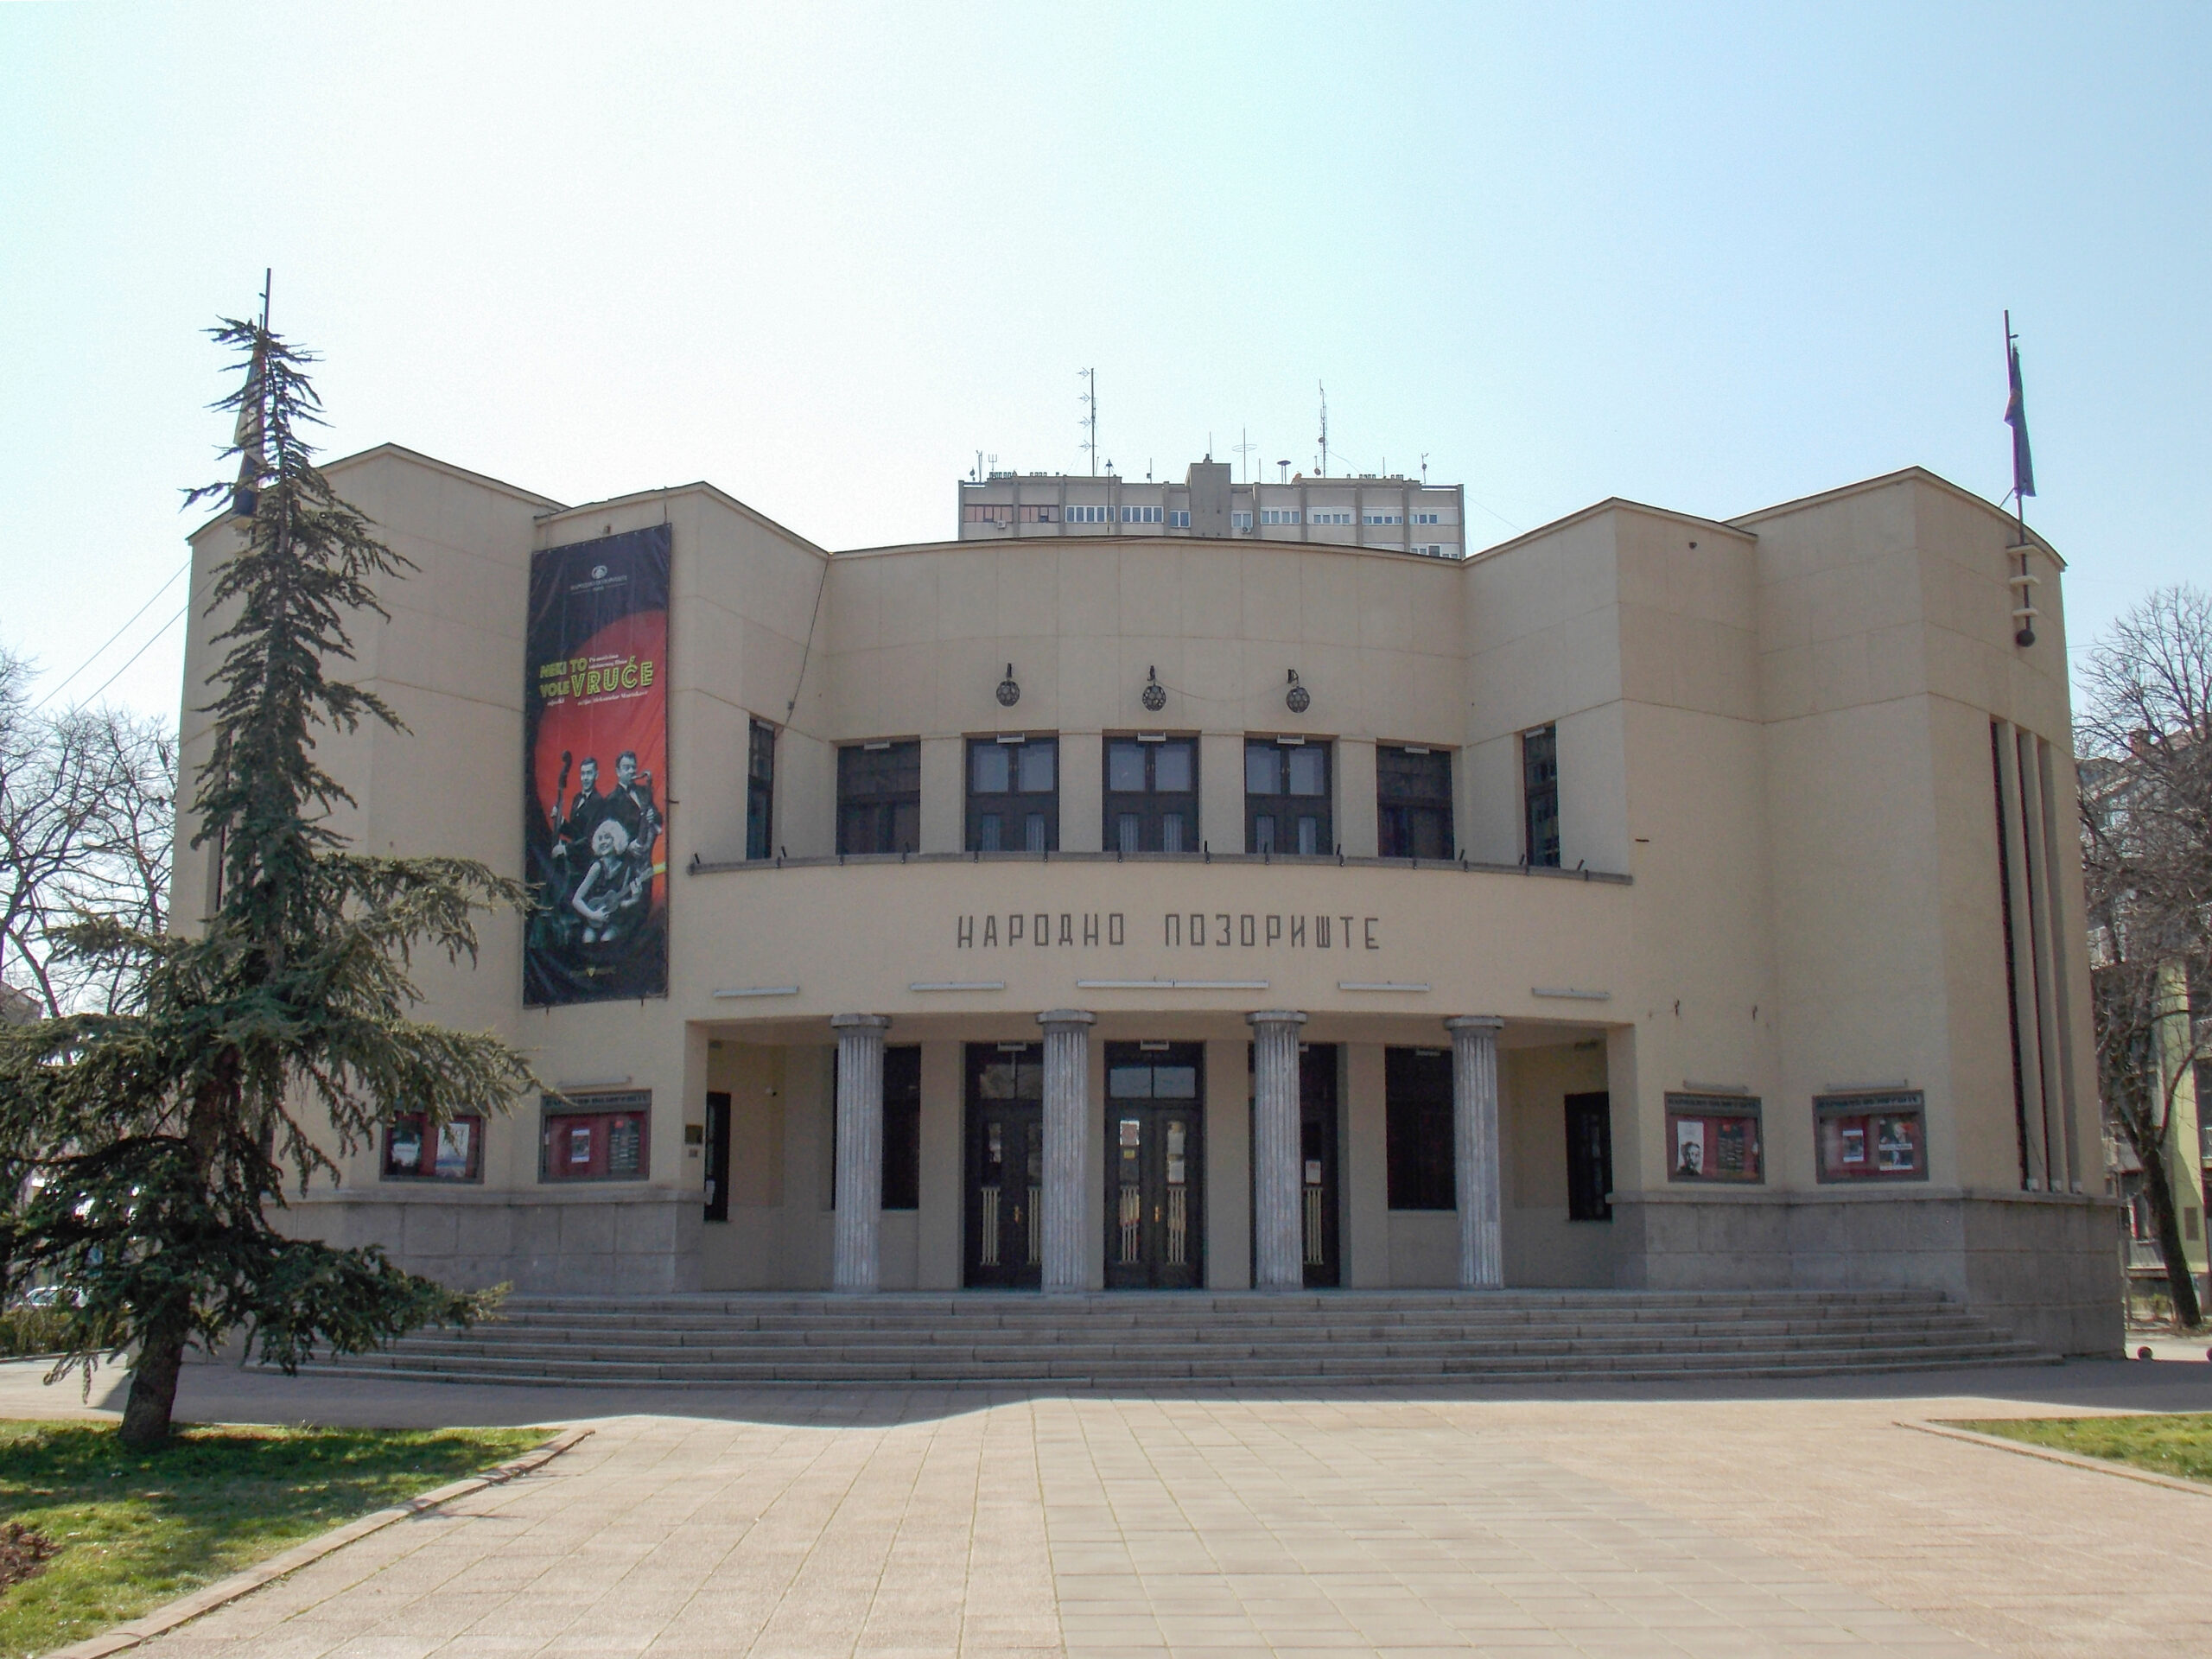 136 godina Narodnog pozorišta u Nišu